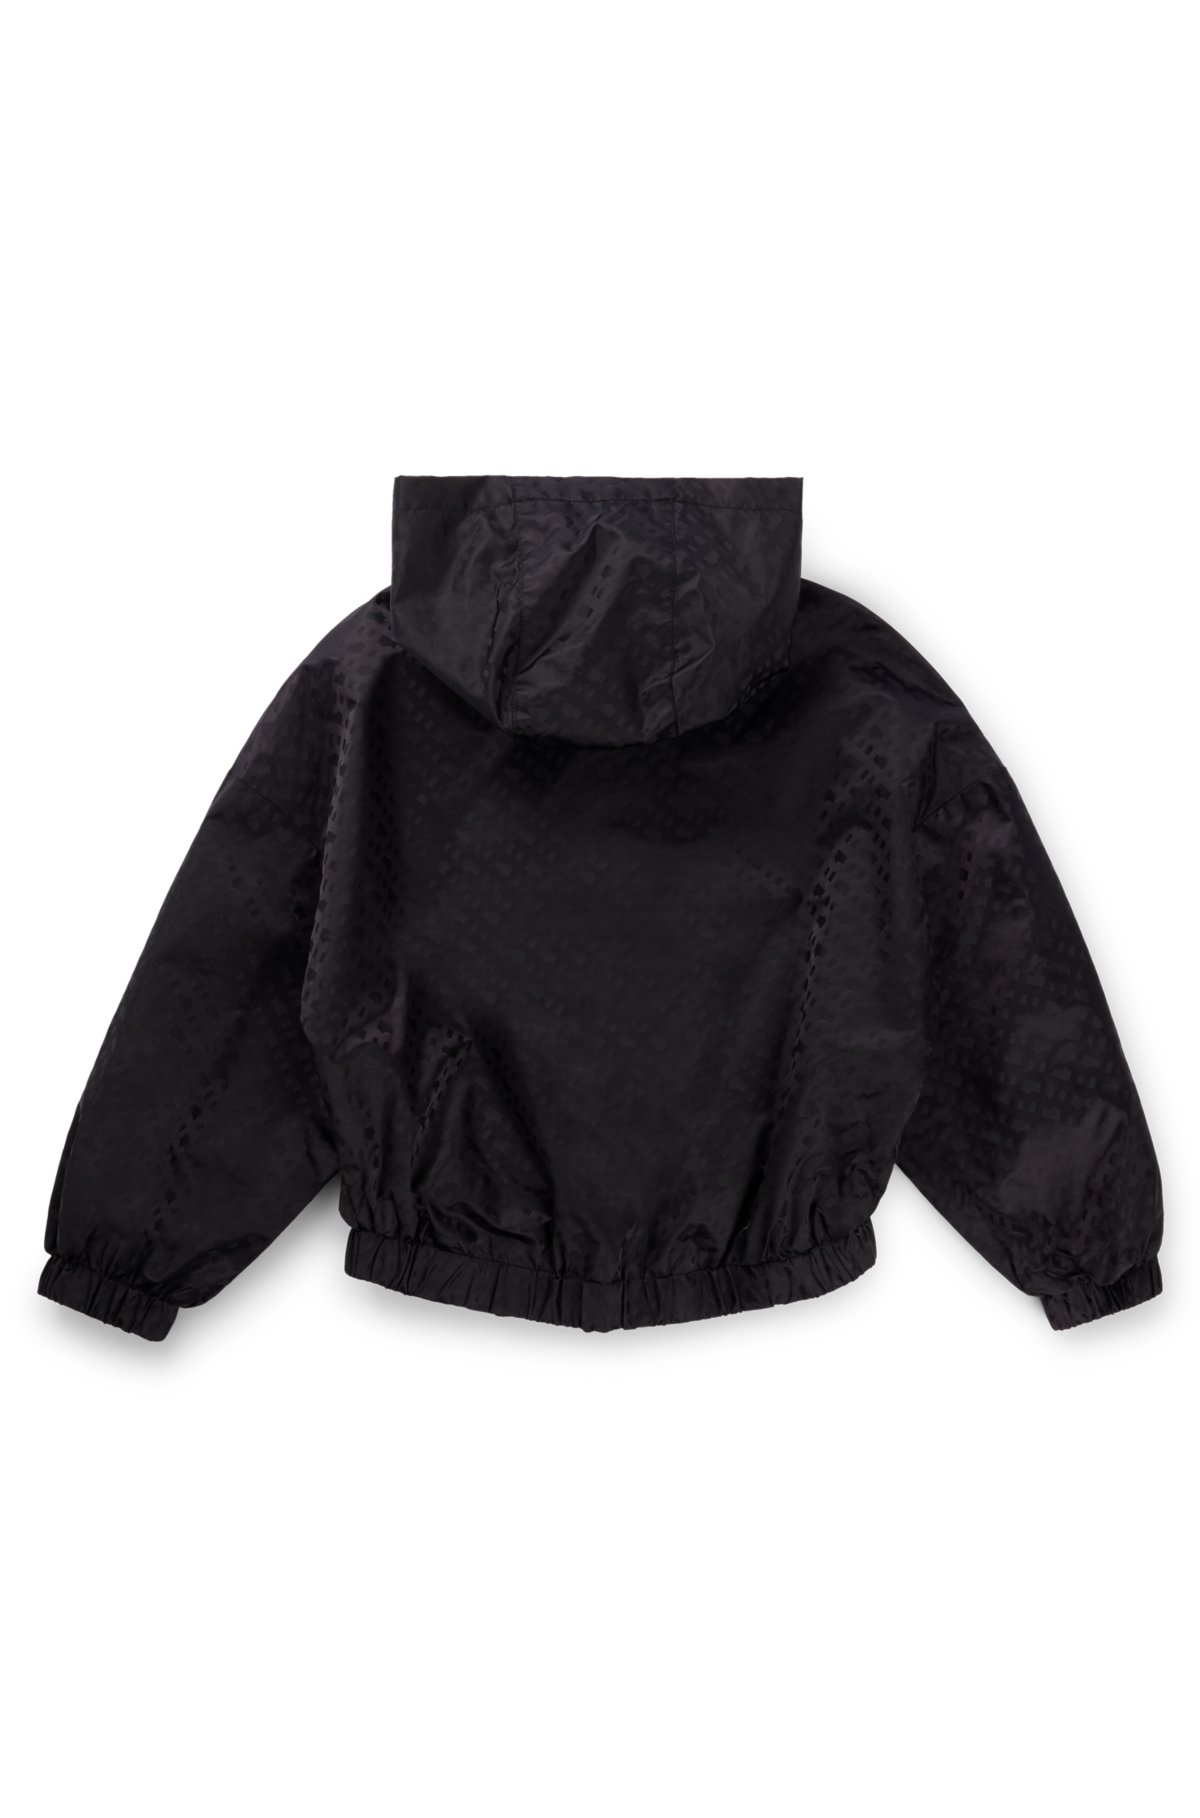 Kids' hooded windbreaker jacket with monogram pattern, Black